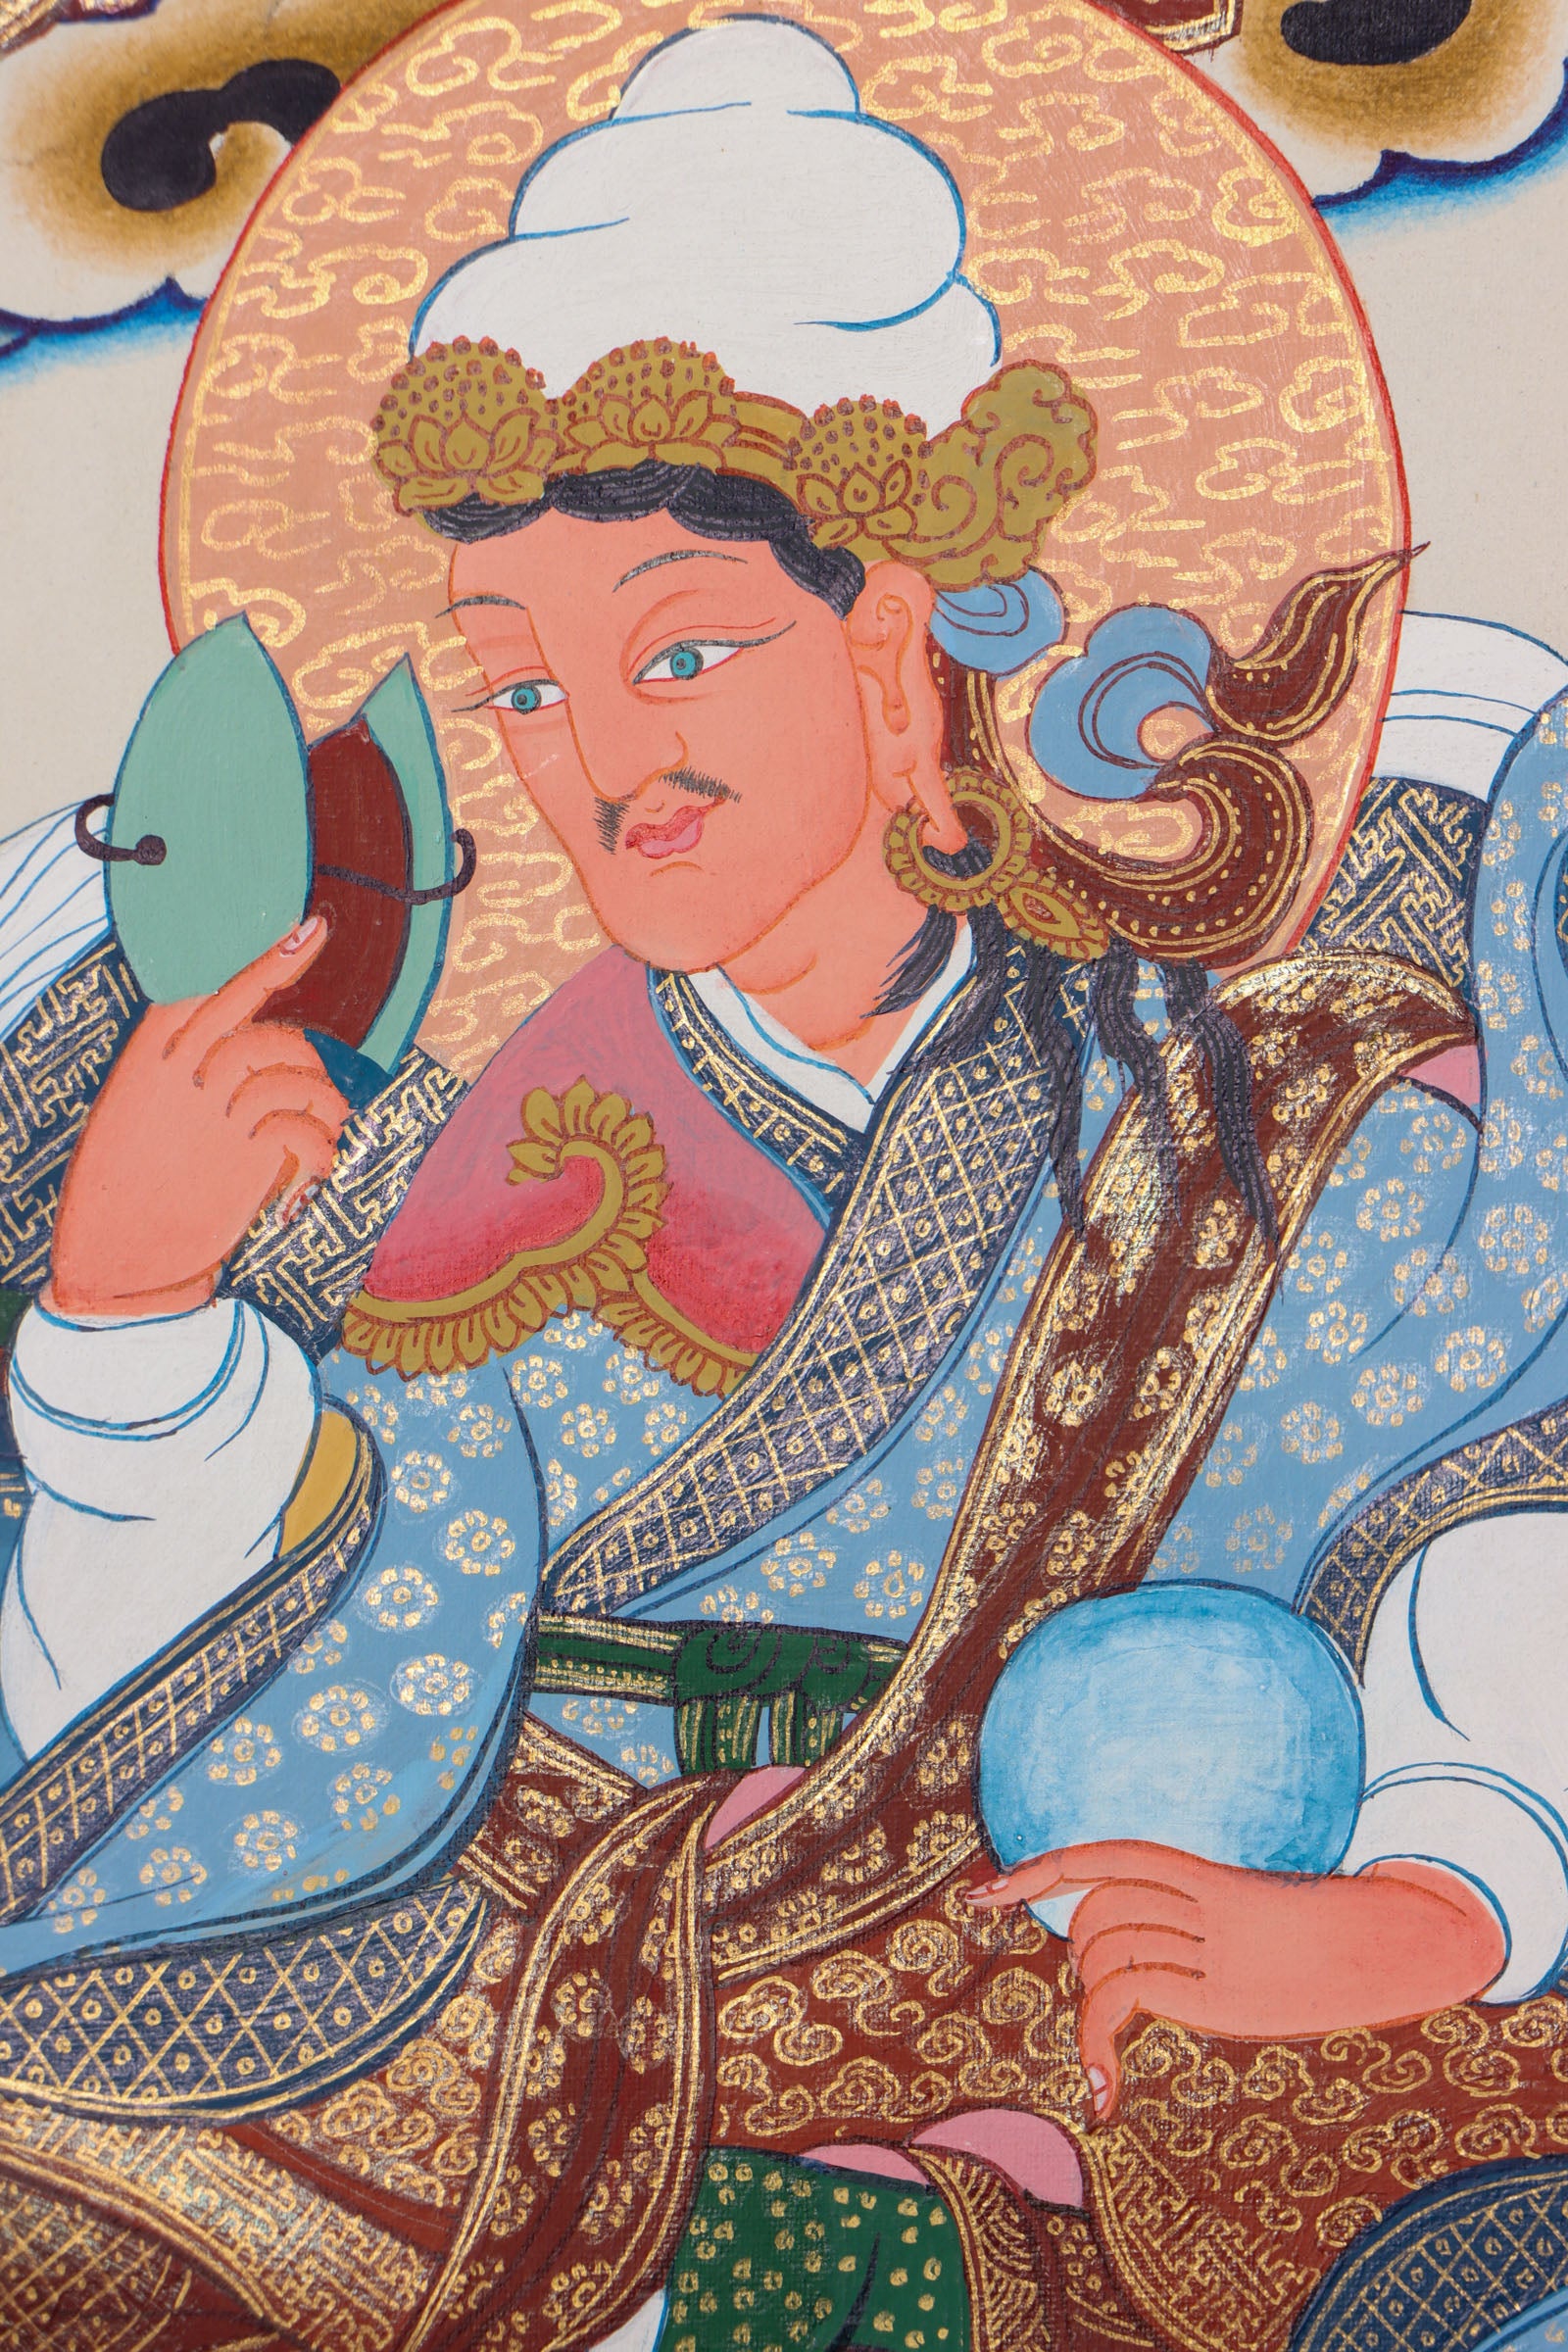 Guru Padmasambhava Thangka painting for meditation practice and spiritual journey.